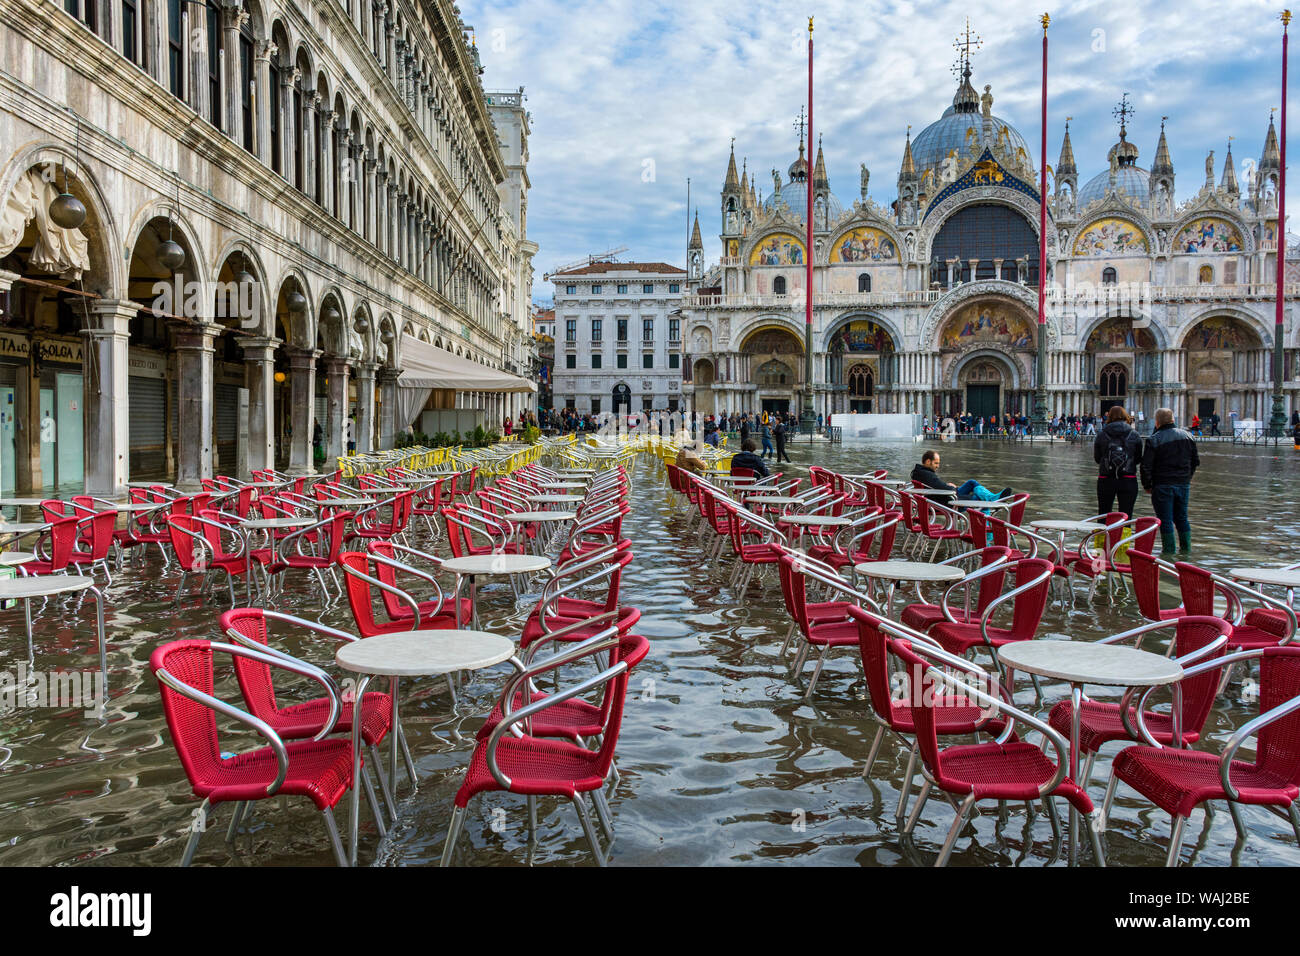 Mesas y sillas en las Procuratie Vecchie y de la Basilica di San Marco, durante una acqua alta (HIGH), caso del agua, la Plaza de San Marcos, en Venecia, Italia Foto de stock